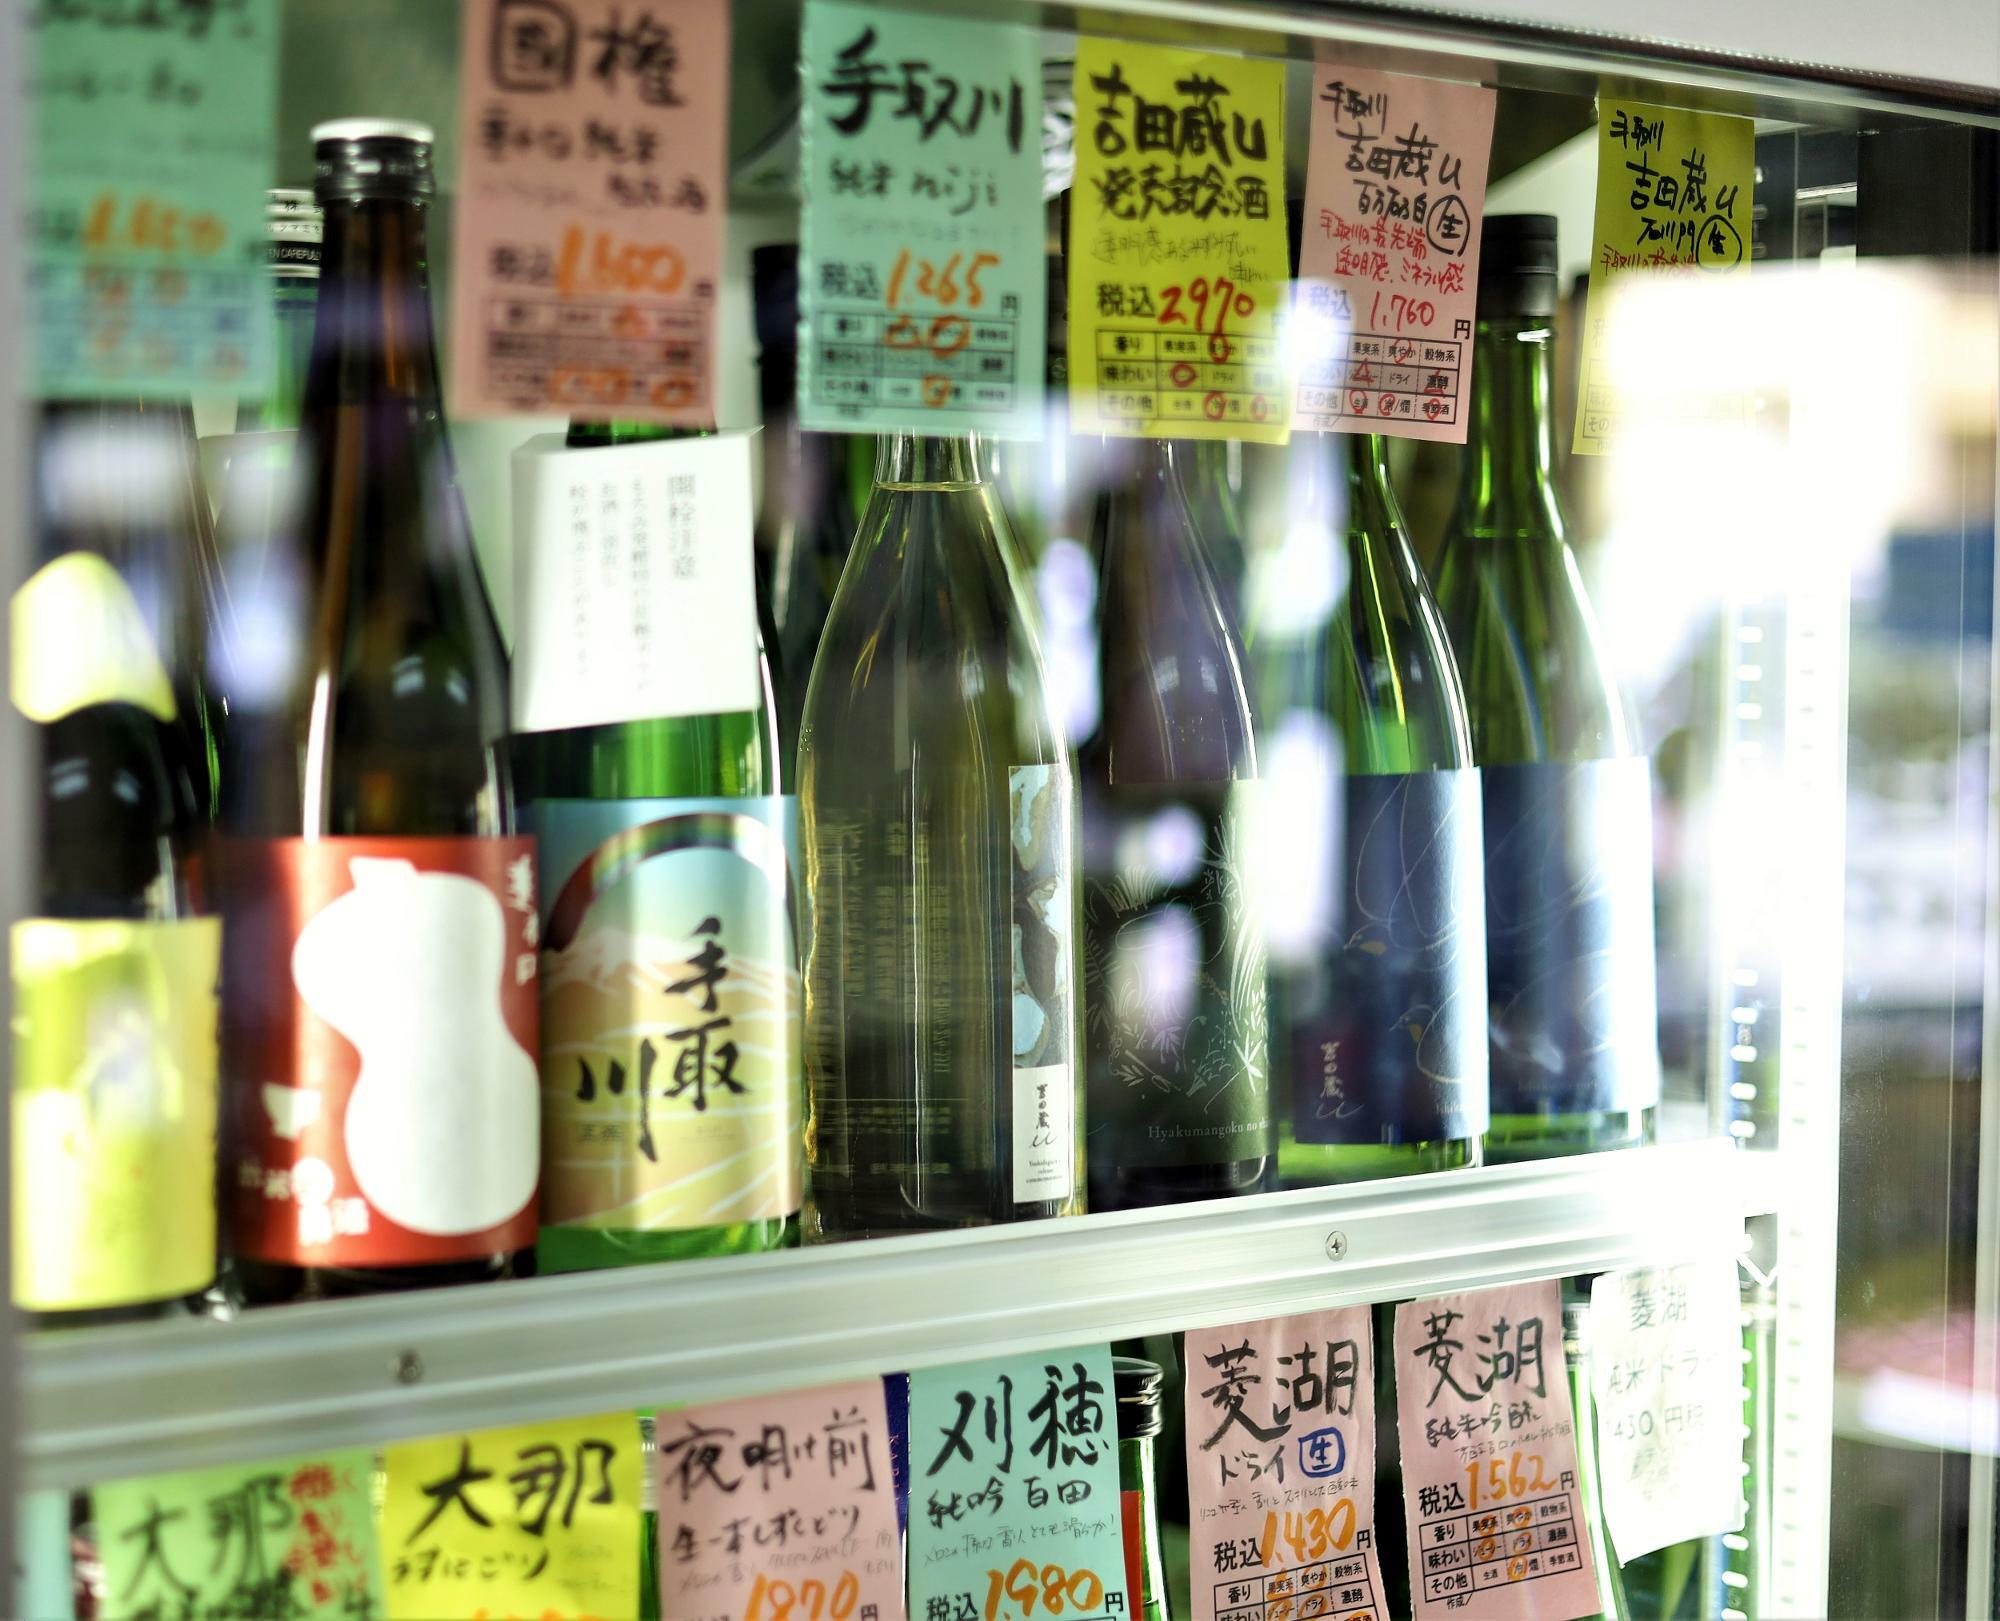 地酒はそれぞれの地域によって特色がある。甘さや辛さ、飲んだ時の印象など、日本酒初心者にもわかりやすく情報が記載。